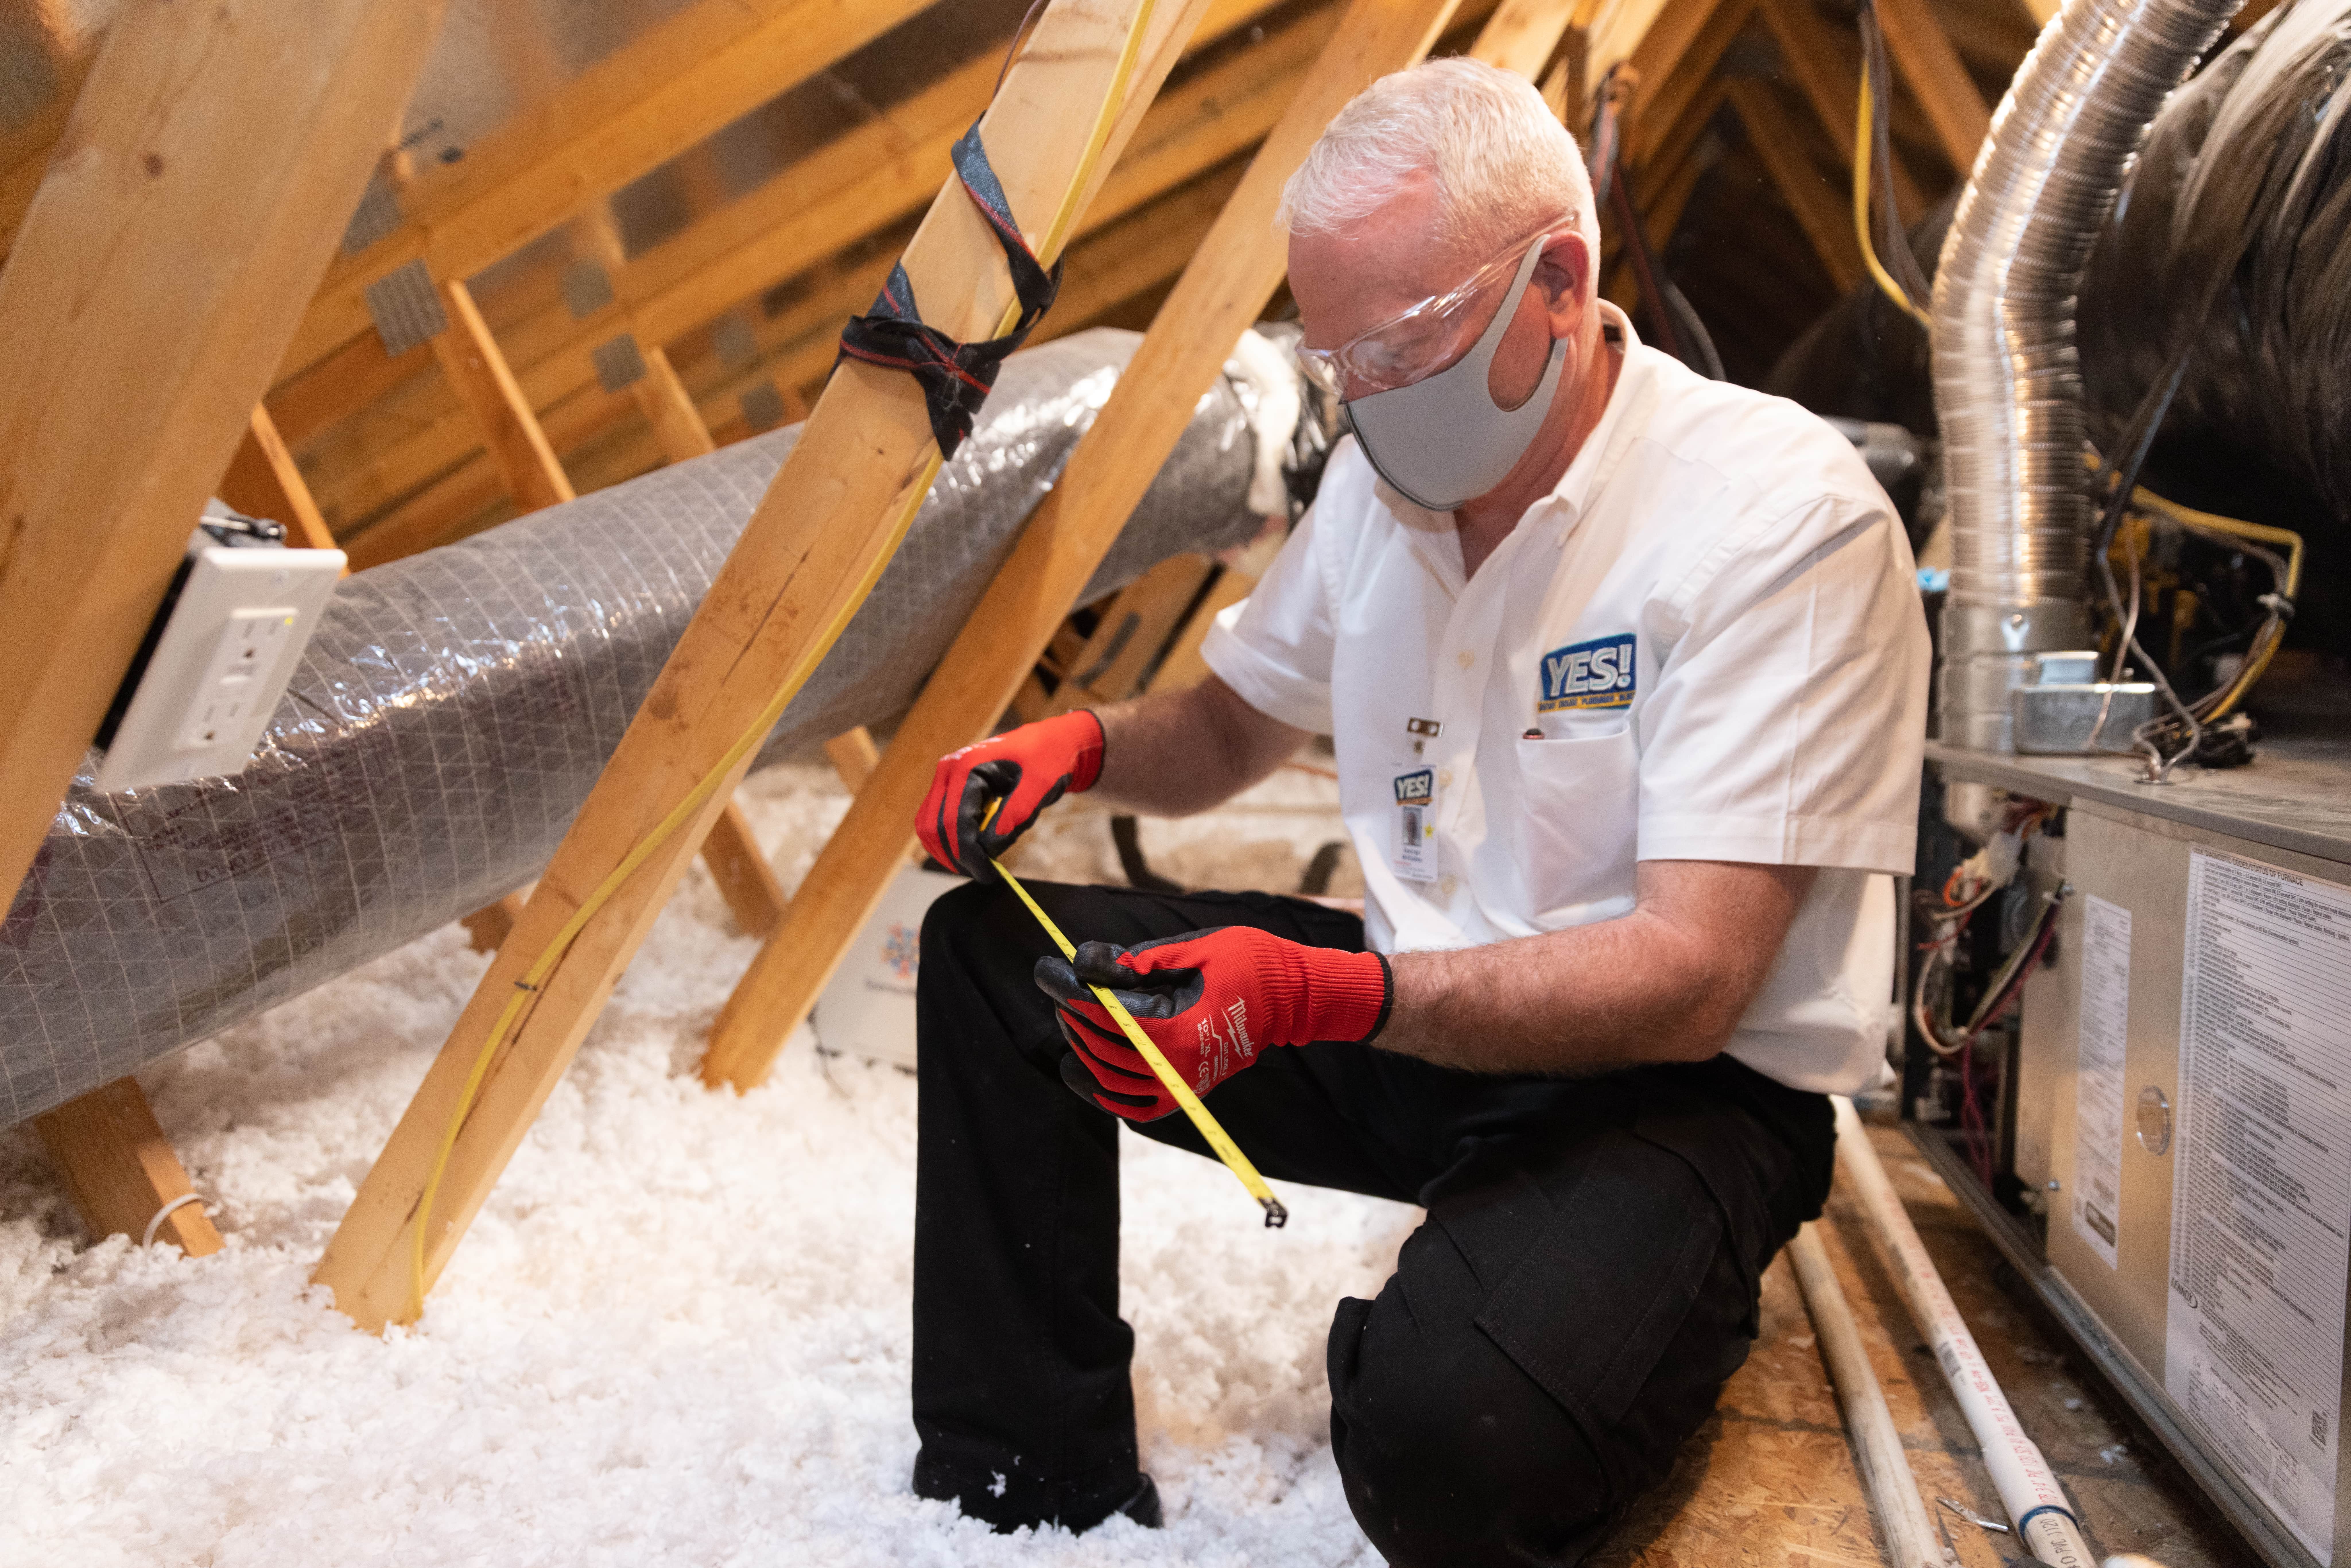 attic insulation installer measuring r-value